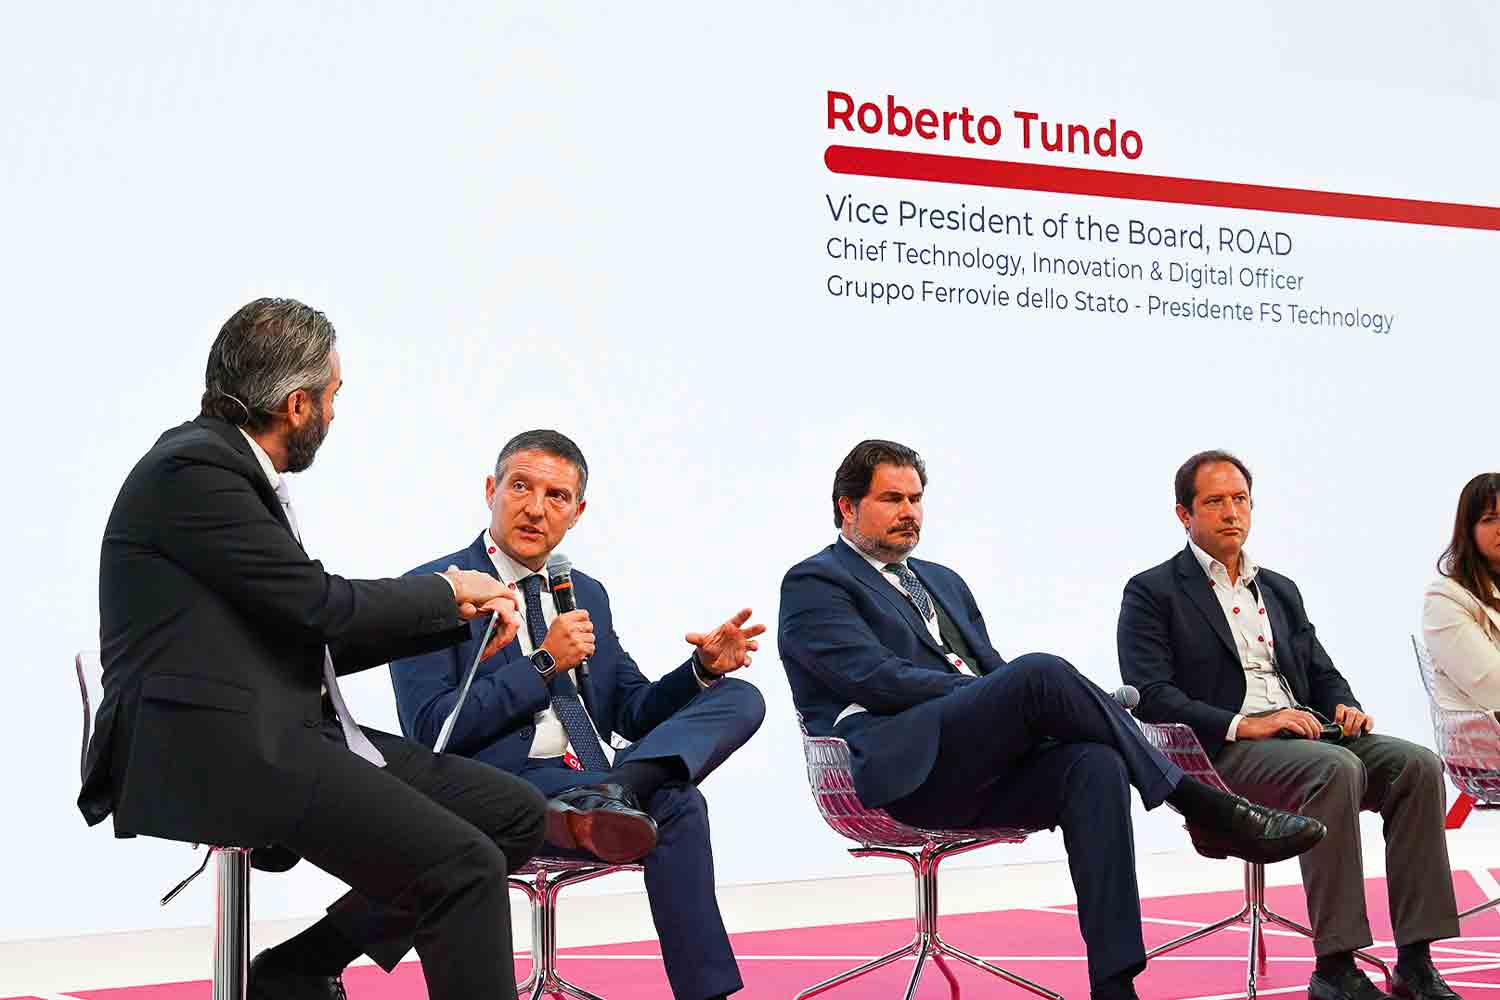 Roberto Tundo Chief Technology, Innovation & Digital Officer del Gruppo FS 